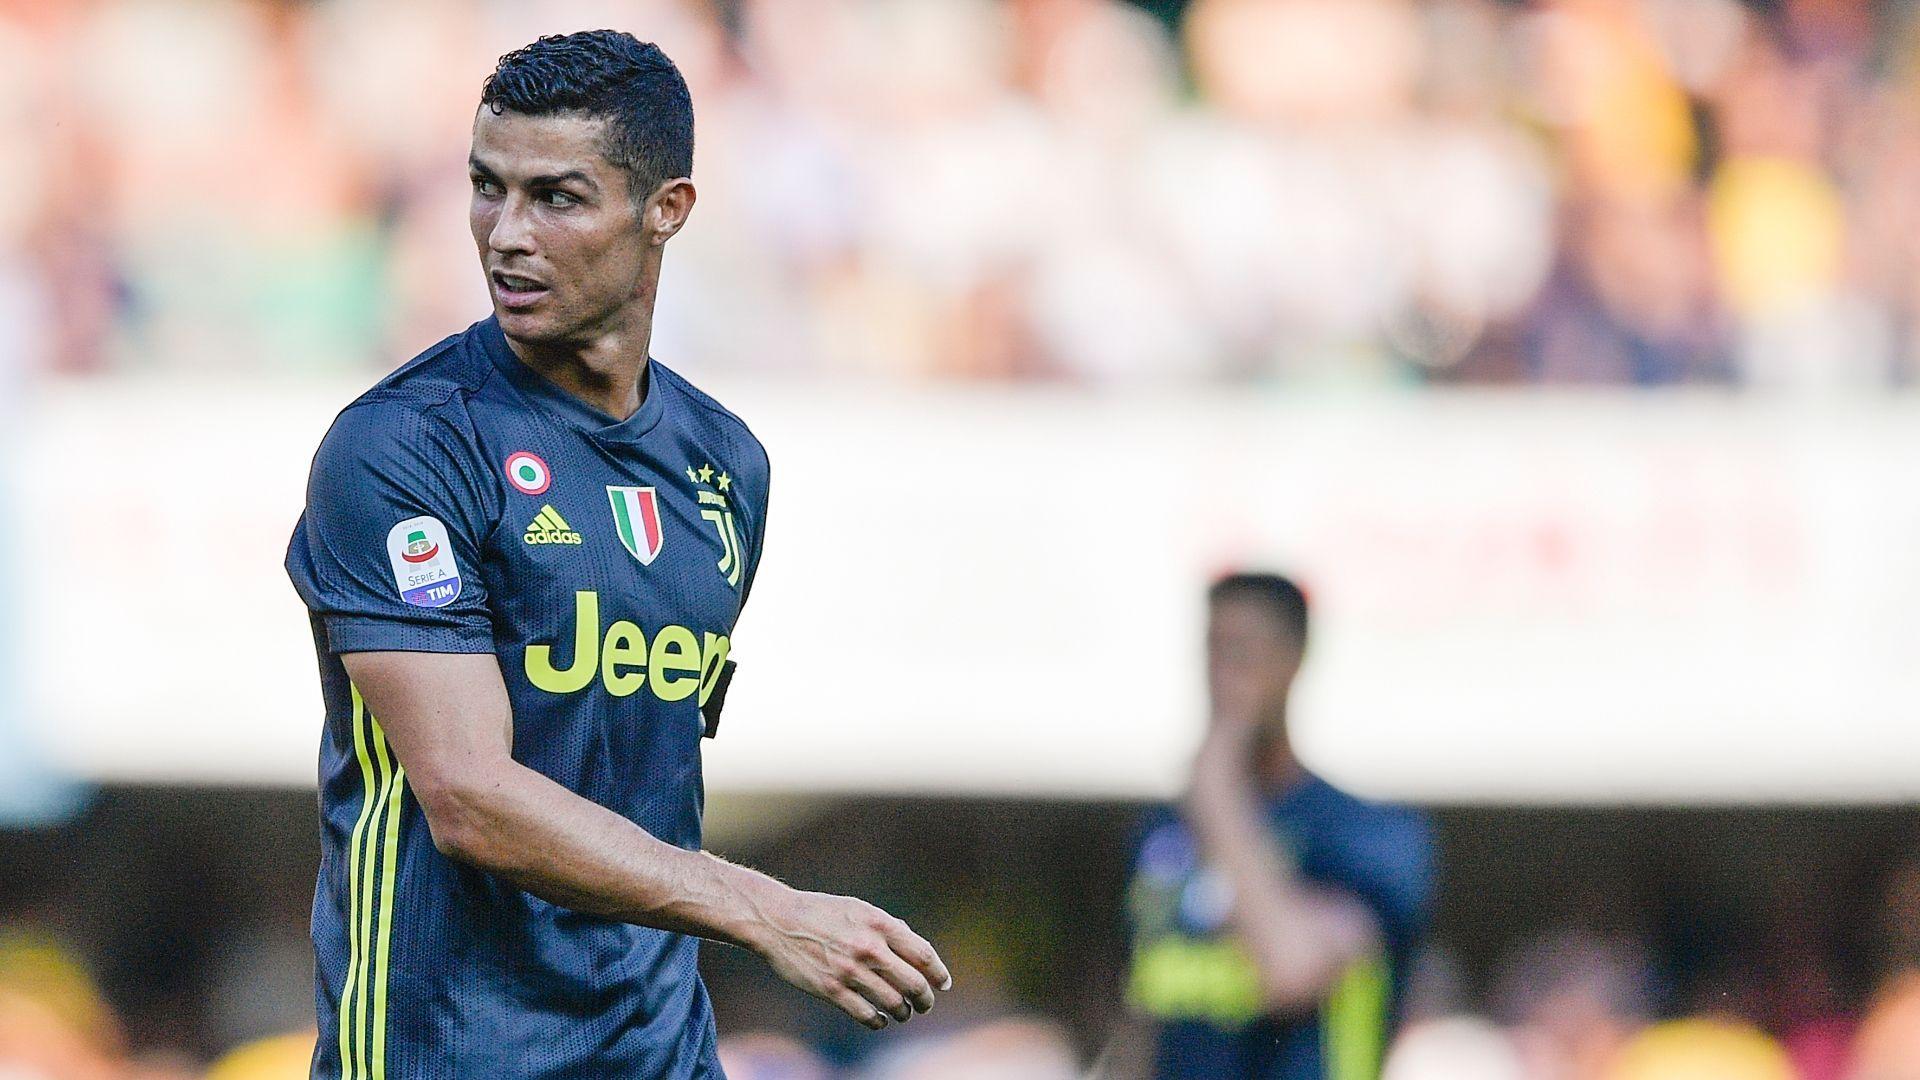 Cristiano Ronaldo conundrum: How should Max Allegri use Juventus